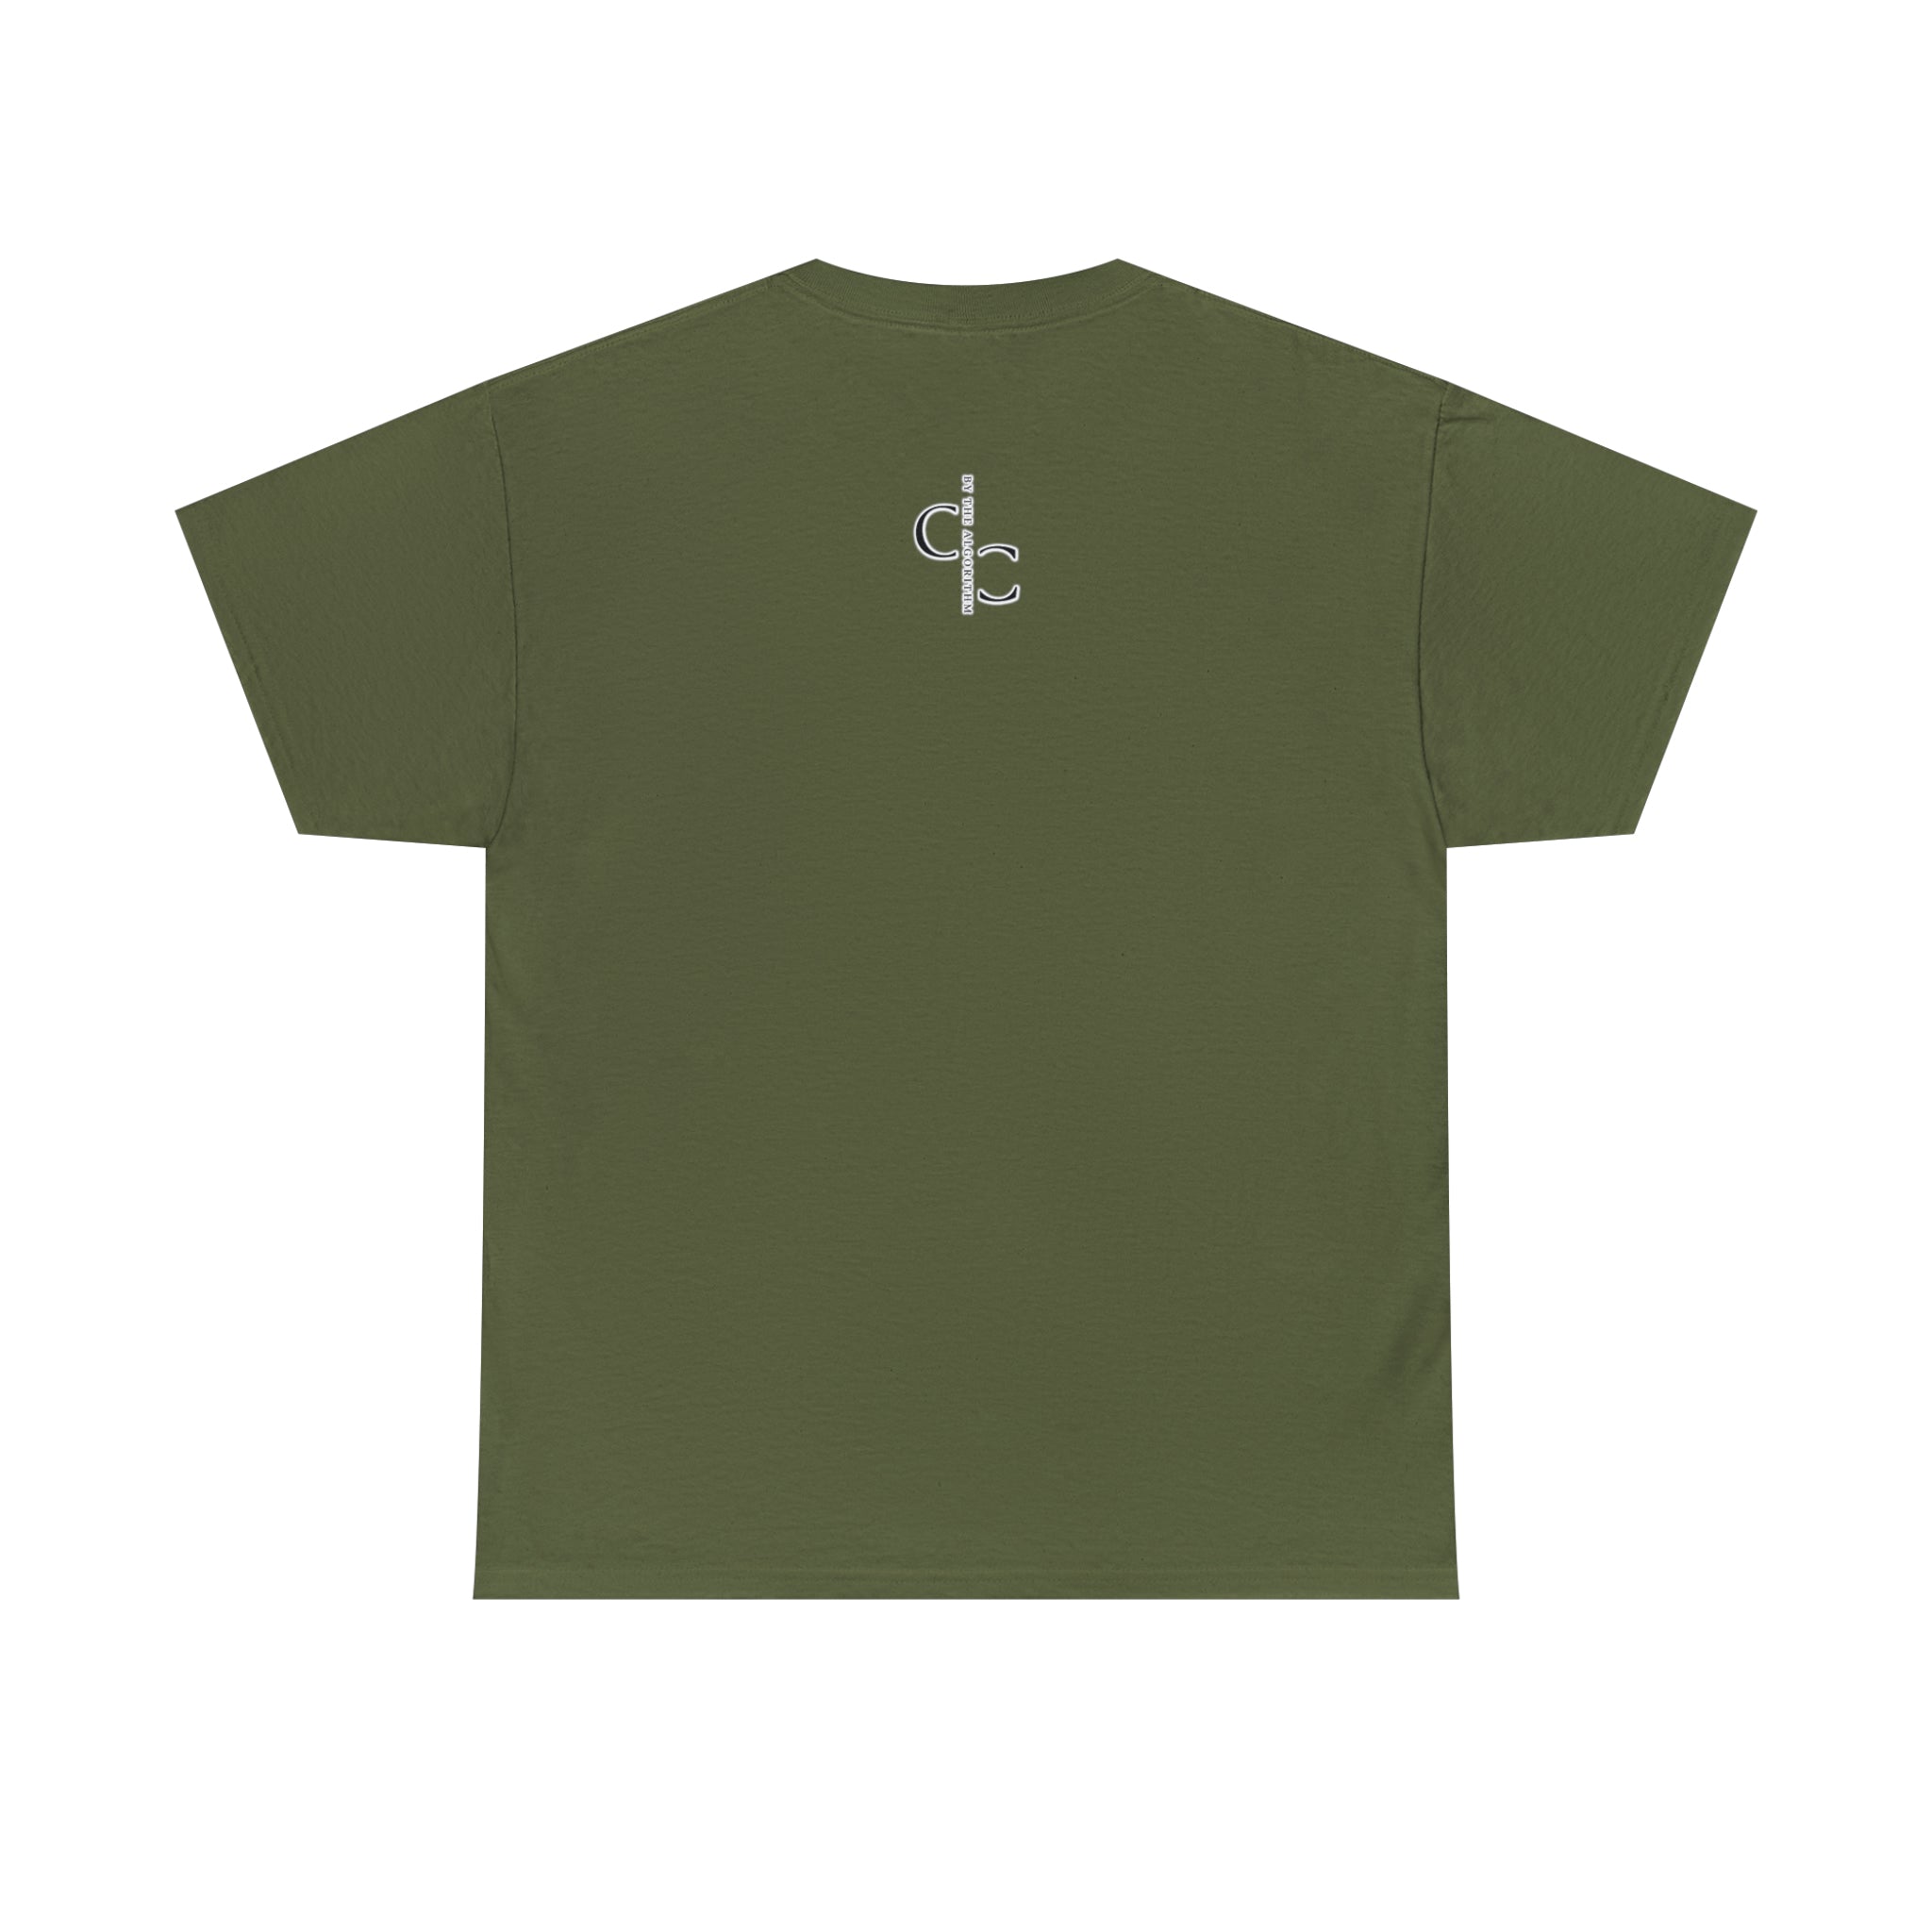 Chai Until I Die T-Shirt Design by C&C